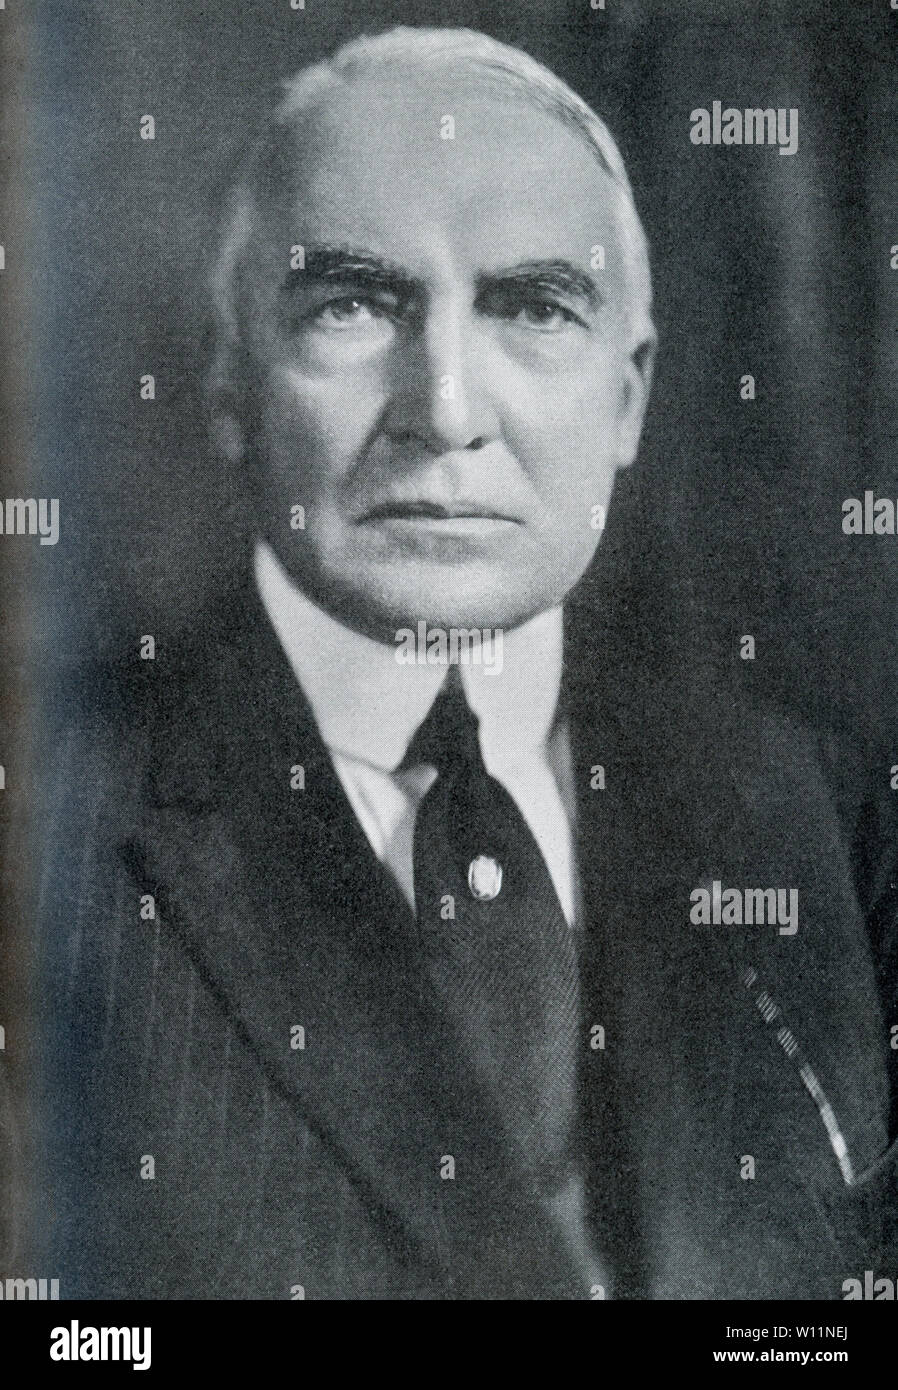 Questa foto risale agli anni venti e mostra la ventinovesima Presidente degli Stati Uniti, Warren Gamaliel Harding, che ha servito come presidente da 1921-1923. Foto Stock